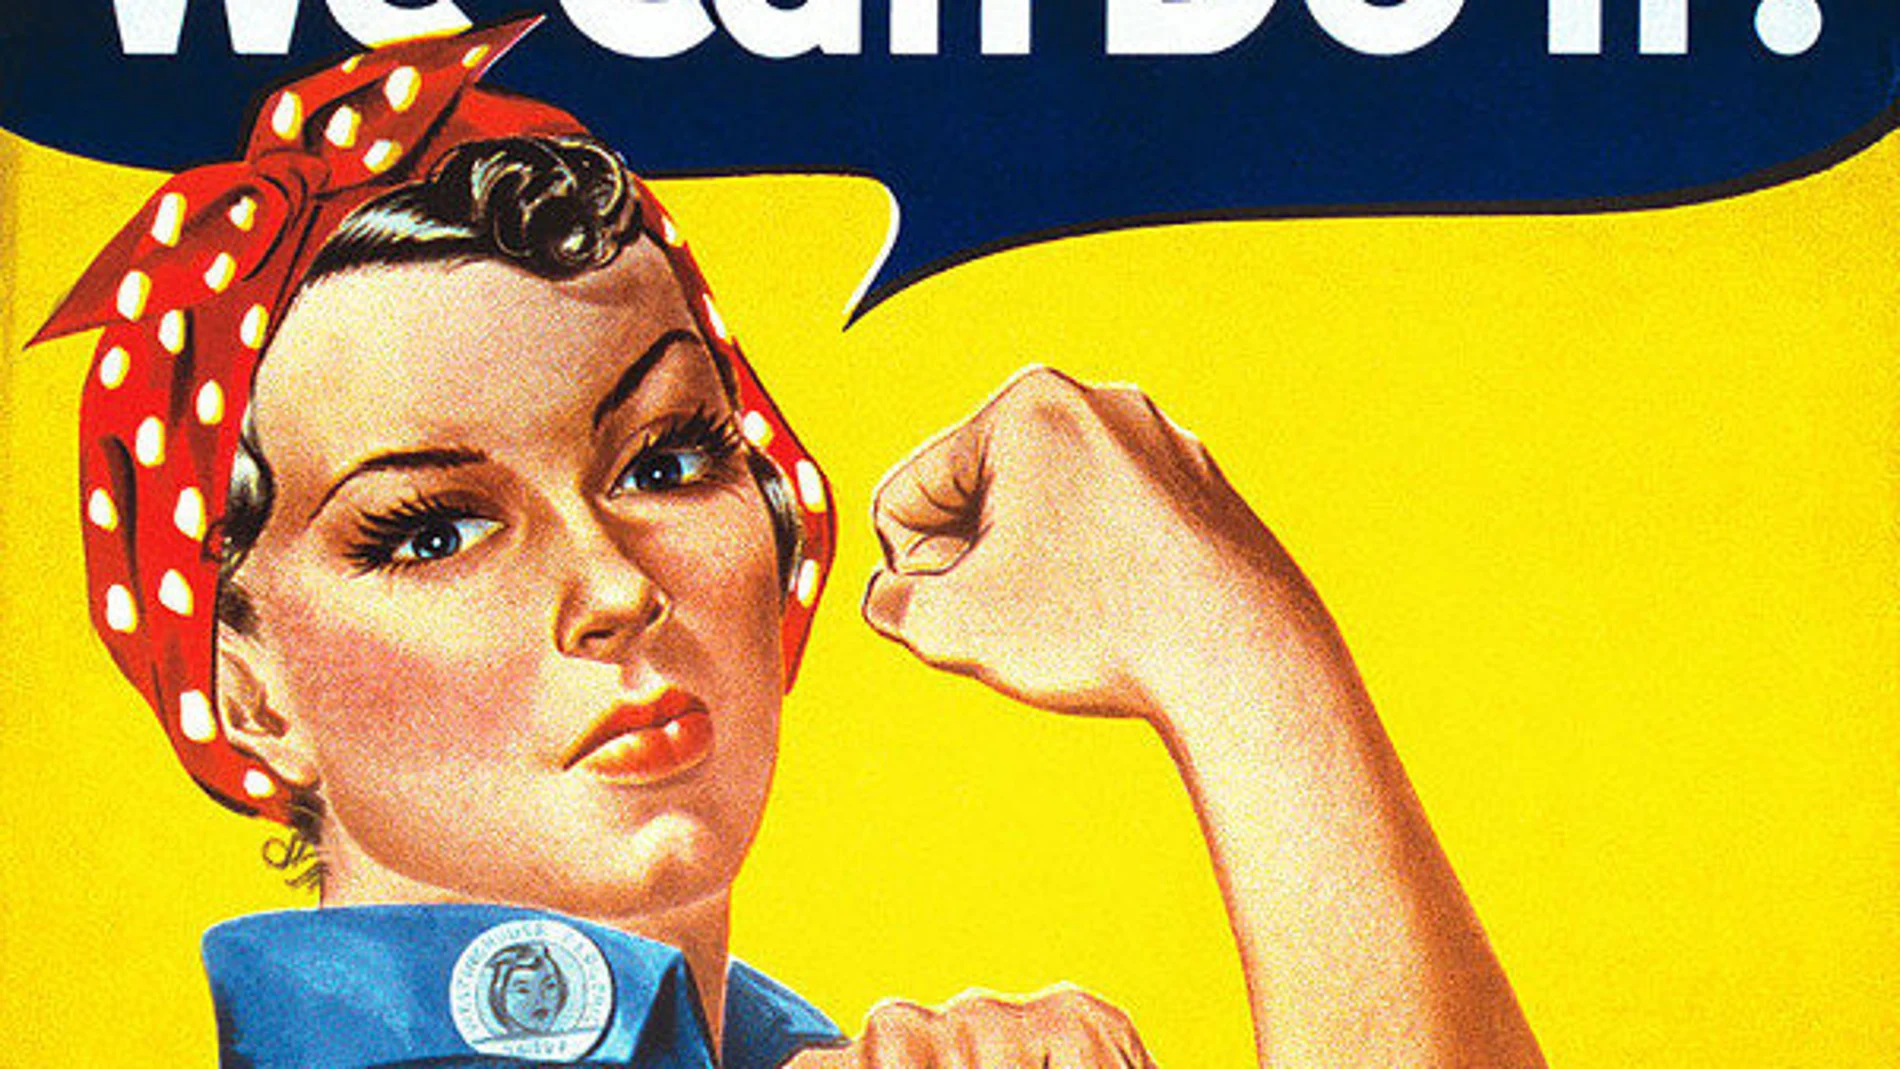 We Can Do It, cartel icono del feminismo